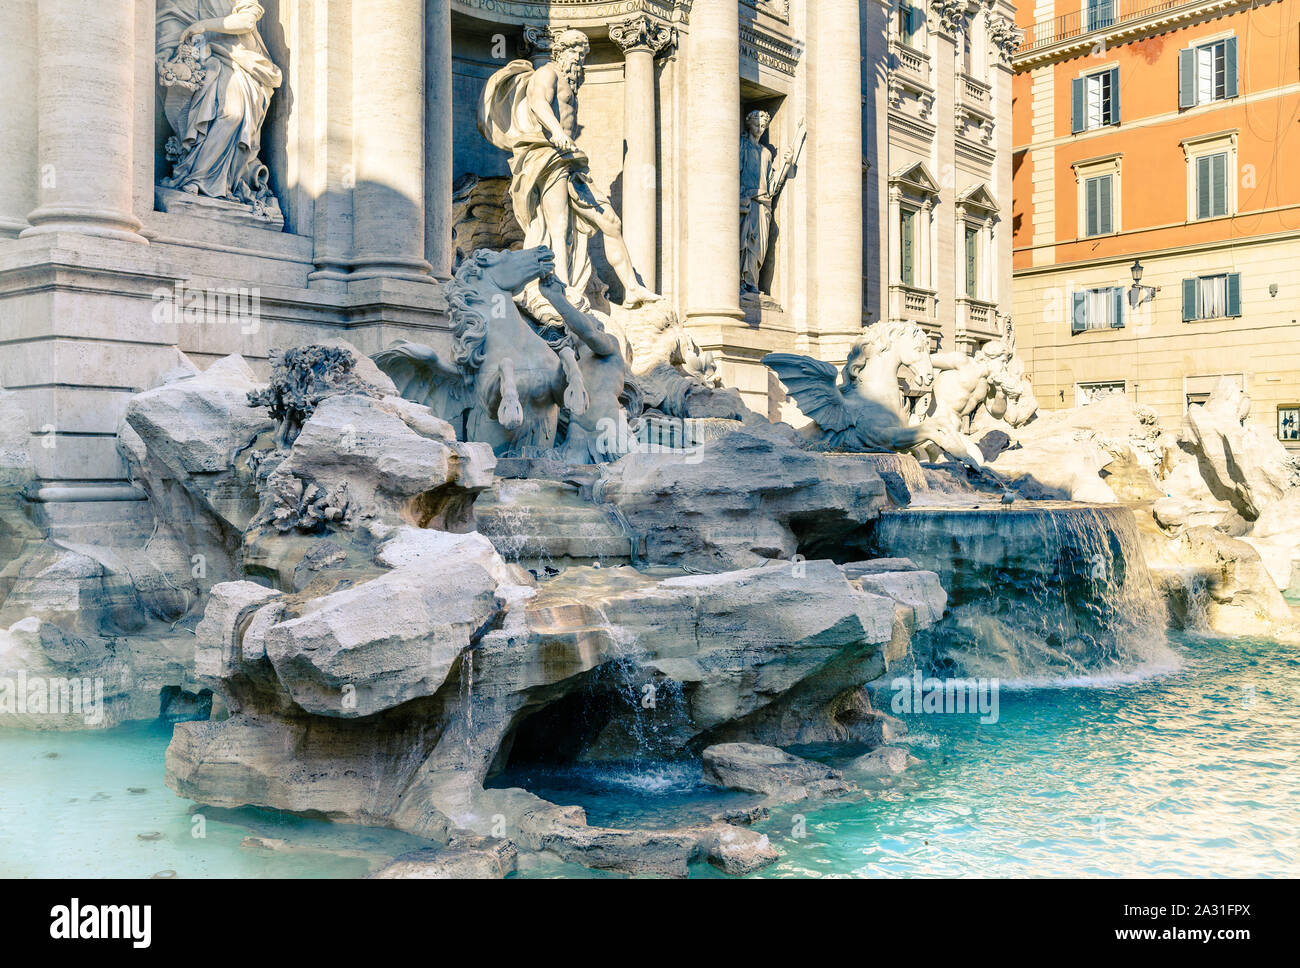 Storica Fontana di Trevi - la più grande fontana barocca di Roma, Italia Foto Stock